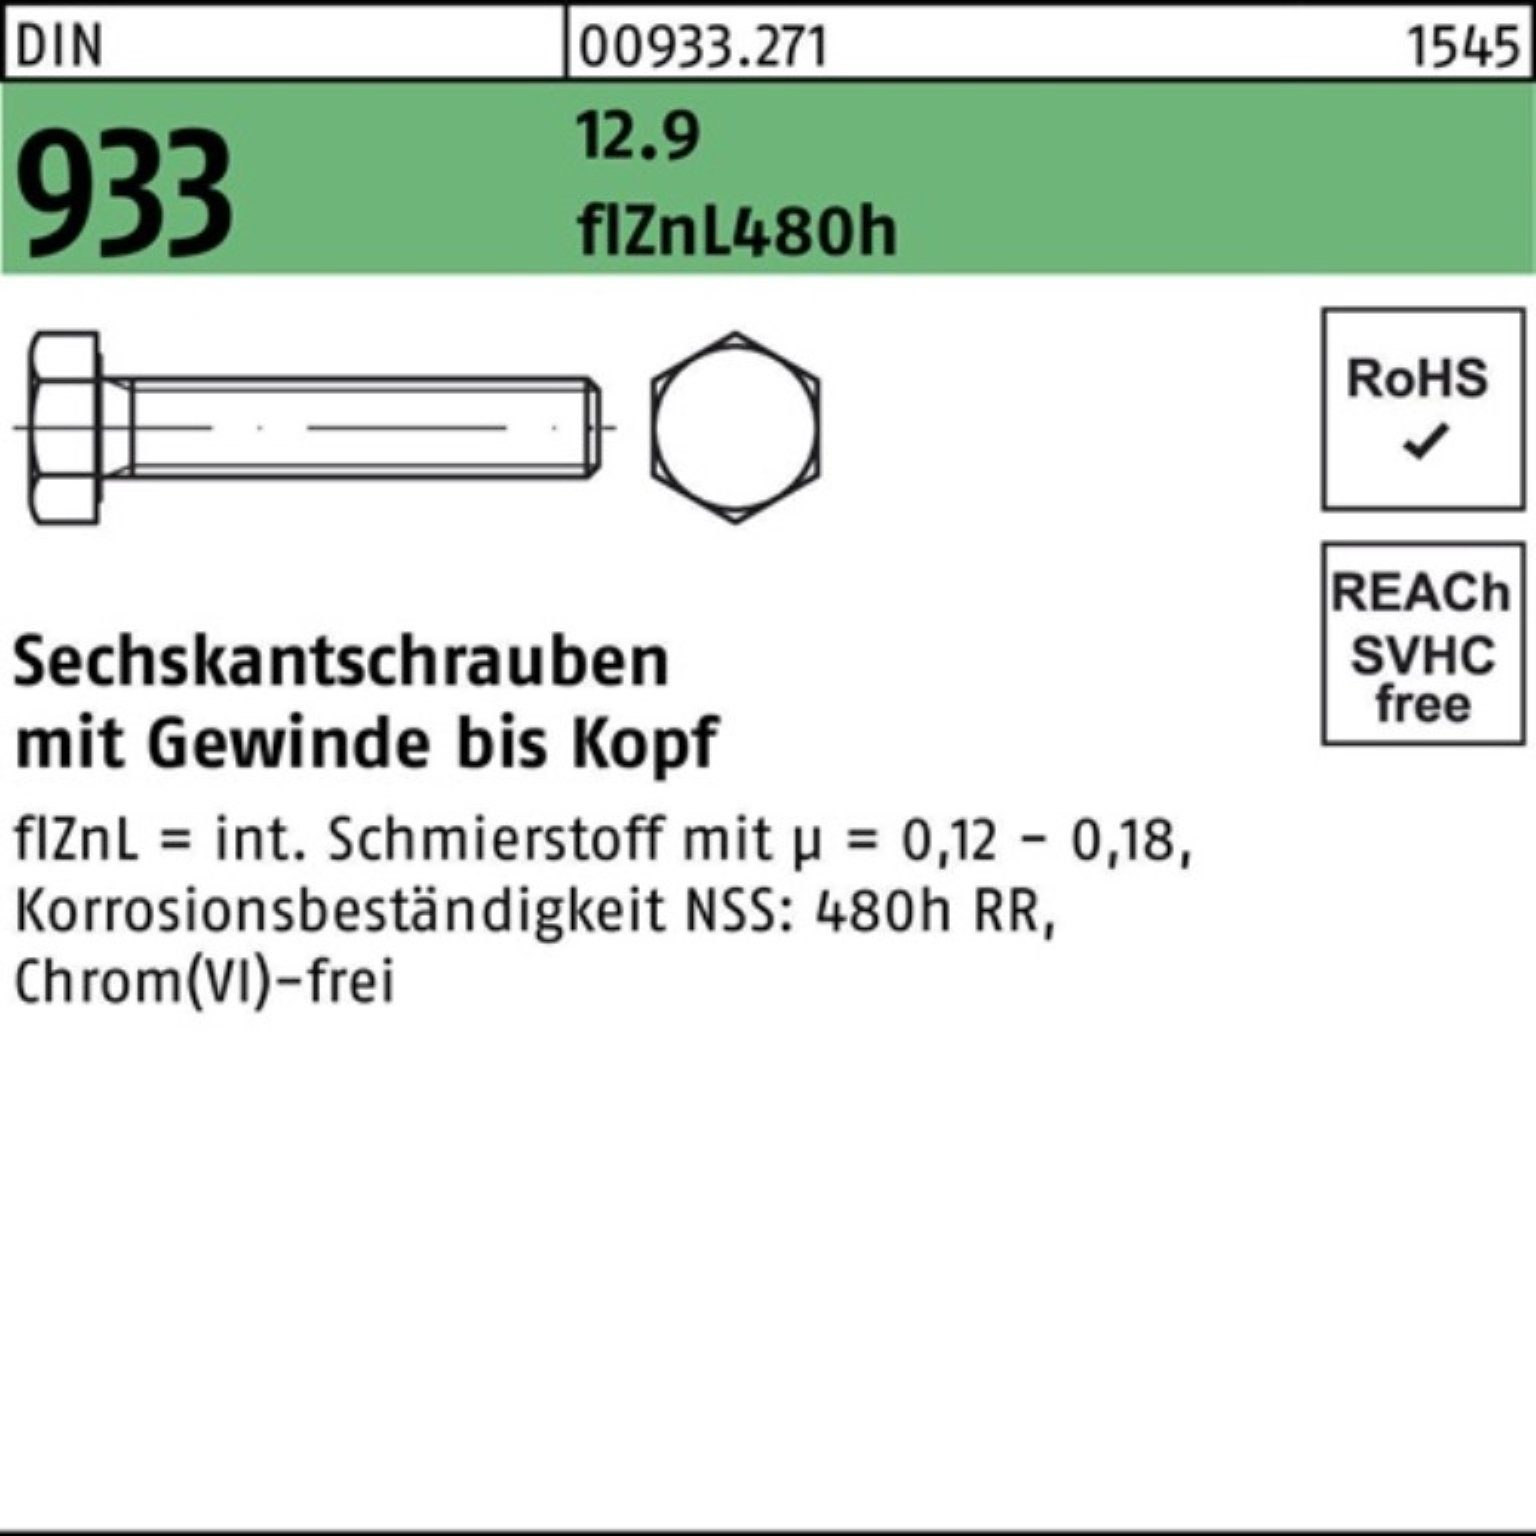 VG 35 Pack 200er M8x Sechskantschraube Sechskantschraube Reyher 480h zinklam 933 flZnL DIN 12.9